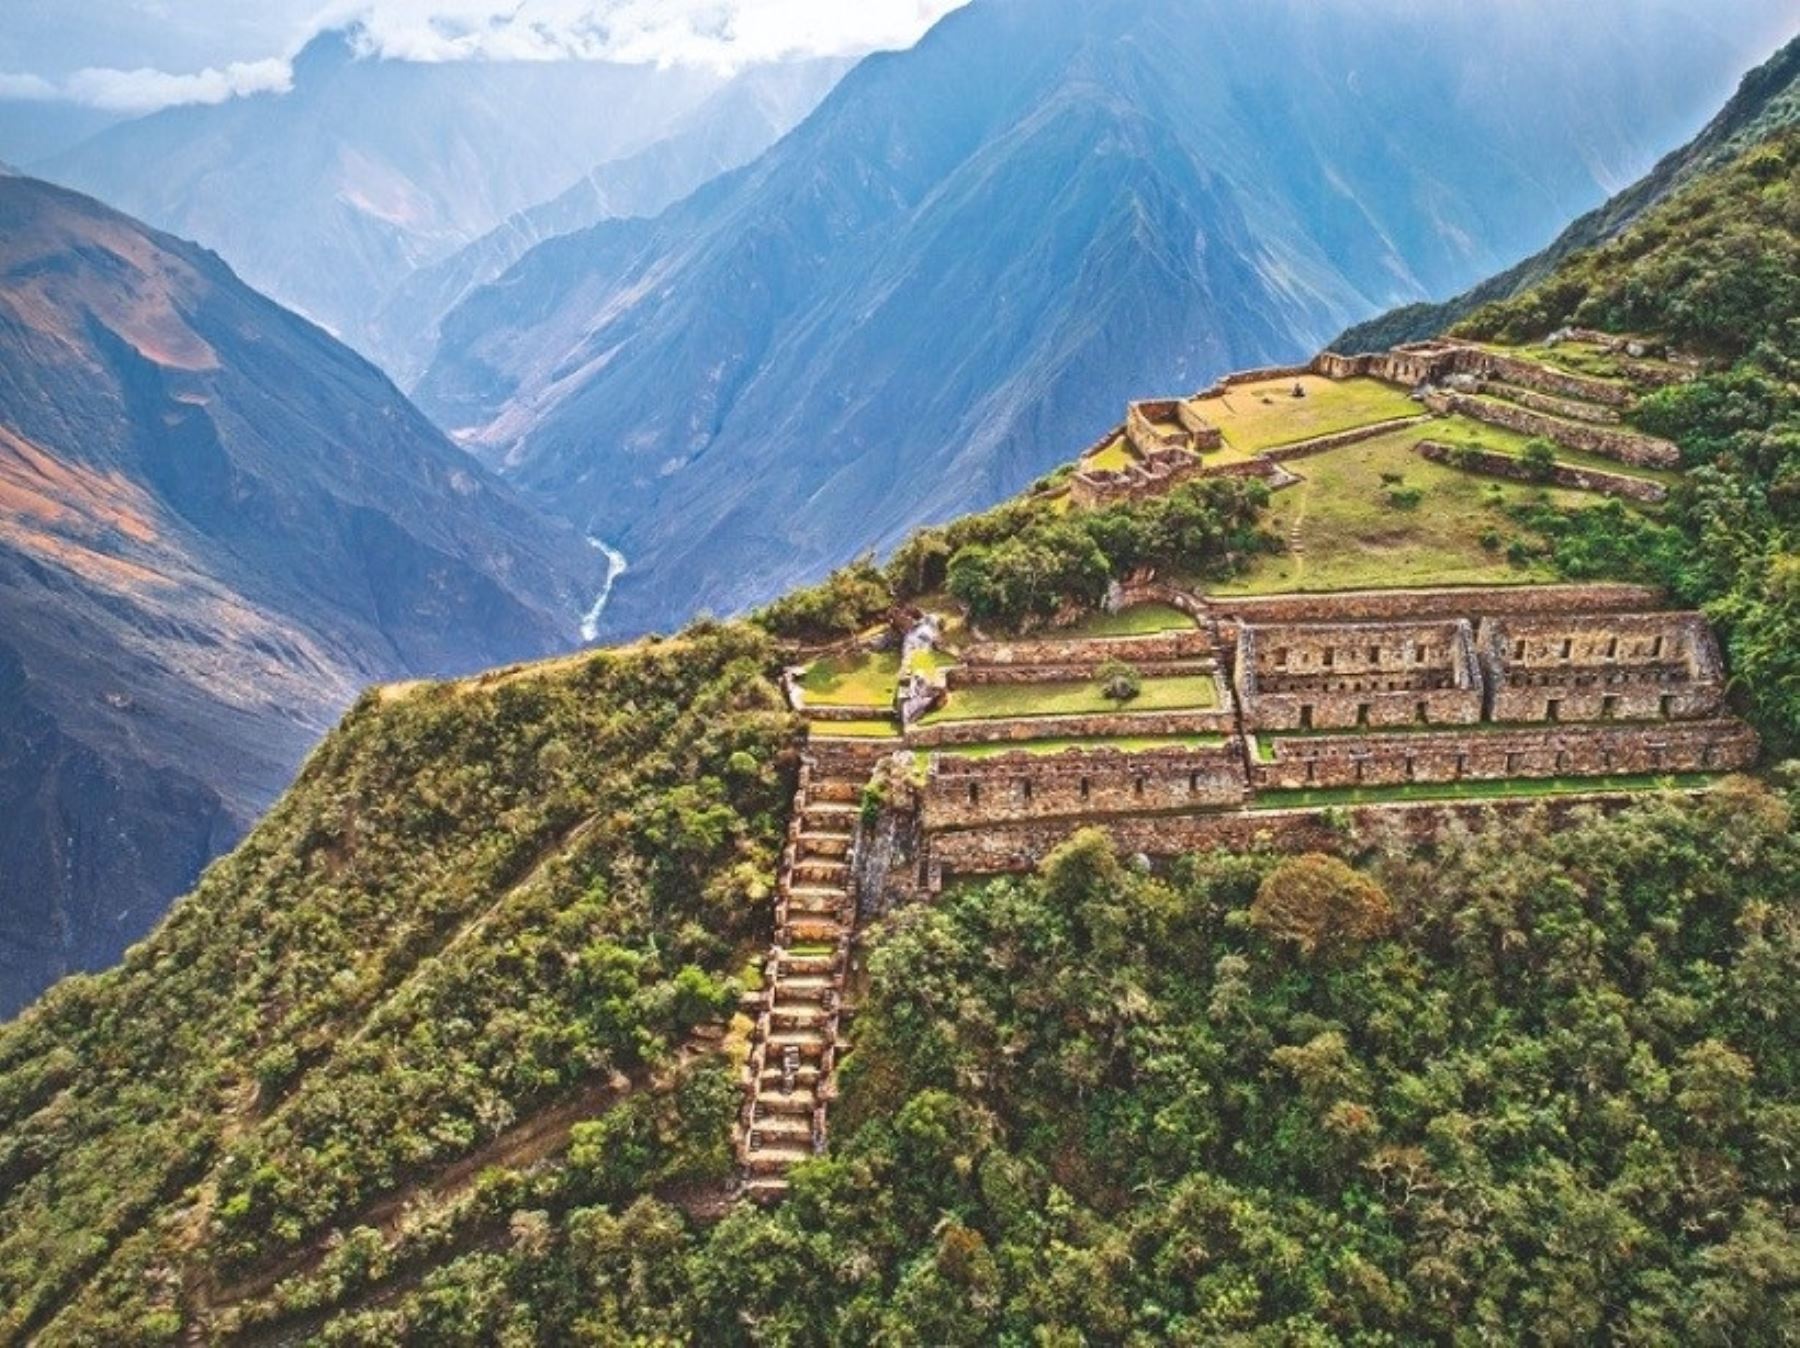 El complejo arqueológico Choquequirao, ubicado en Cusco, fue elegido por National Geographic como uno de los cinco mejores destinos de aventura para visitar el 2023.